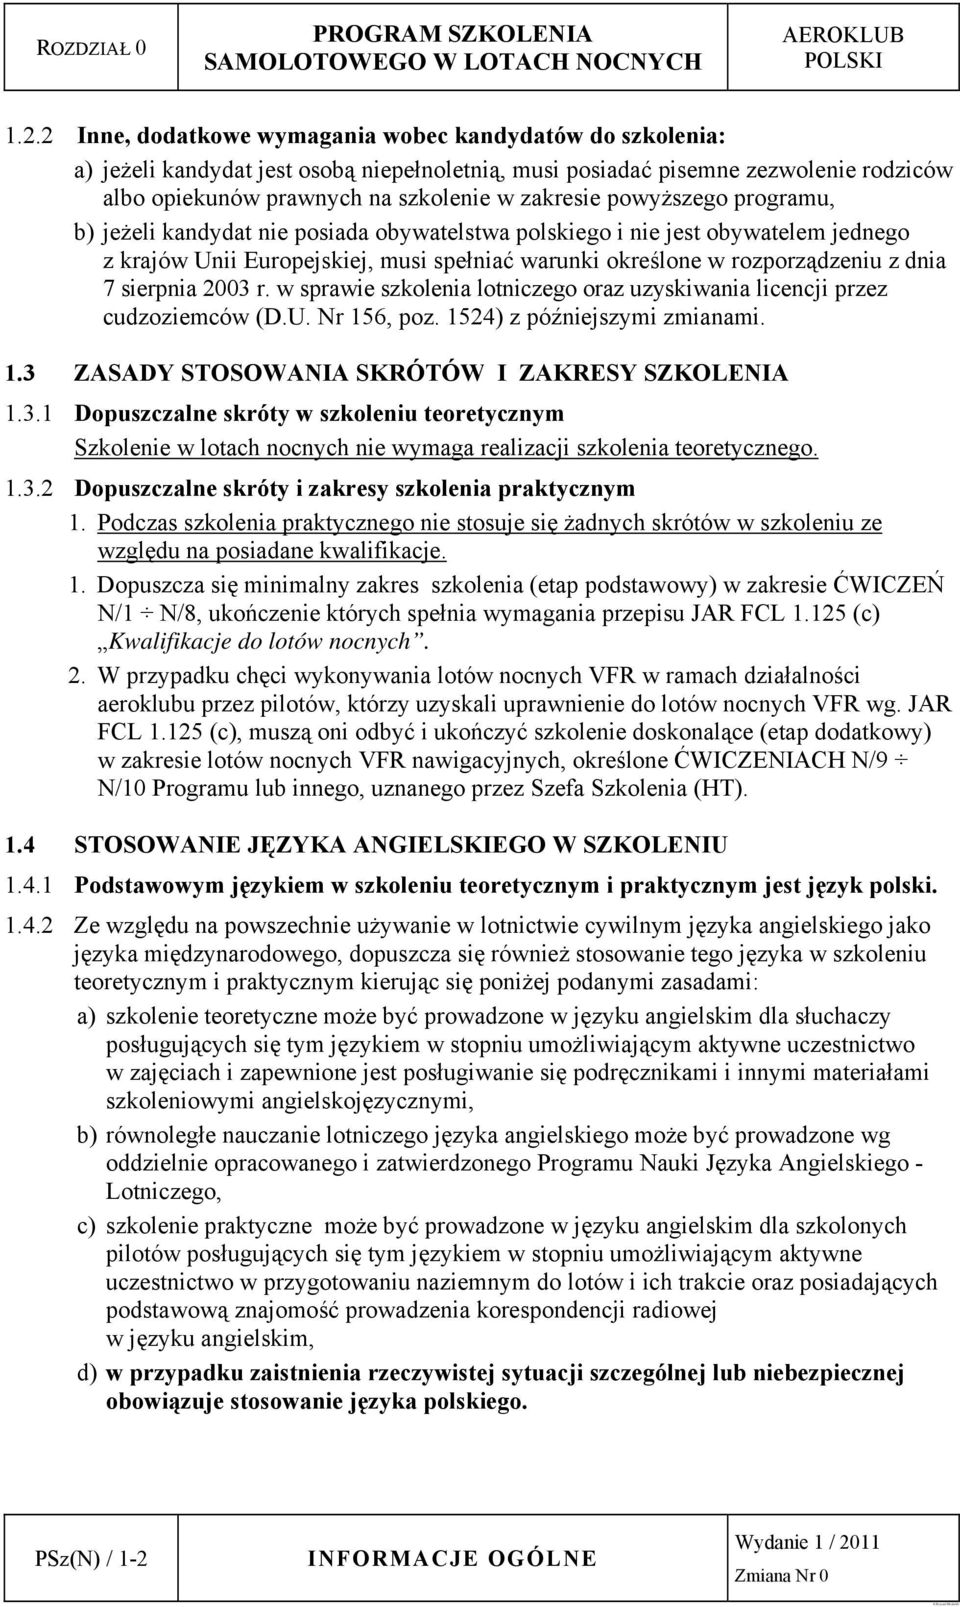 powyższego programu, b) jeżeli kandydat nie posiada obywatelstwa polskiego i nie jest obywatelem jednego z krajów Unii Europejskiej, musi spełniać warunki określone w rozporządzeniu z dnia 7 sierpnia